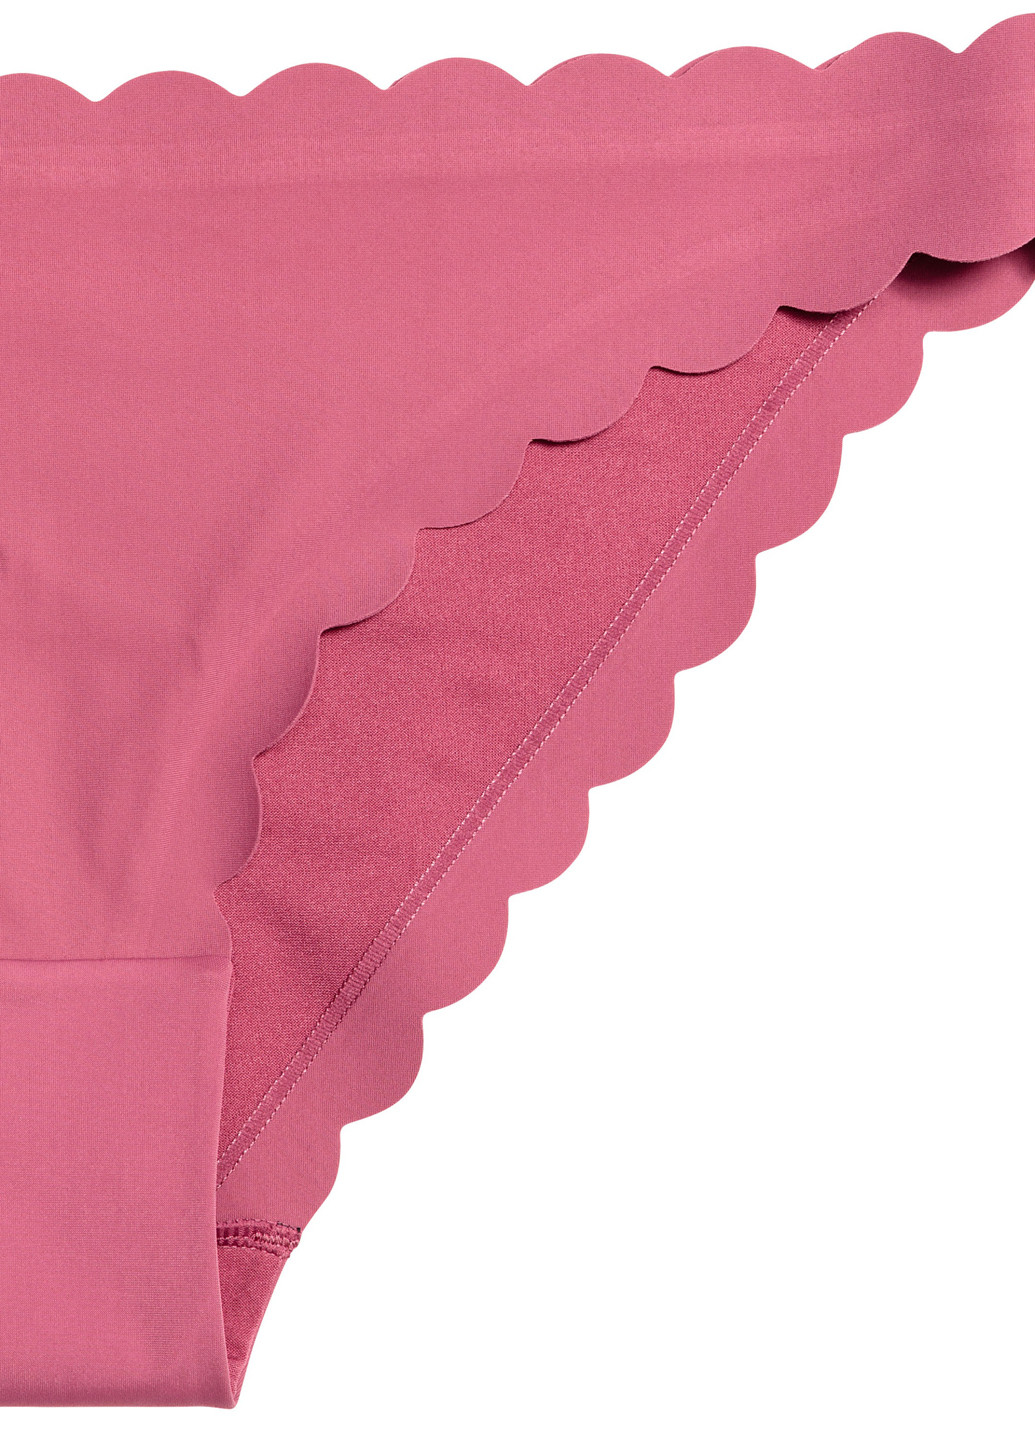 Купальні труси H&M сліп темно-рожеві пляжні поліамід